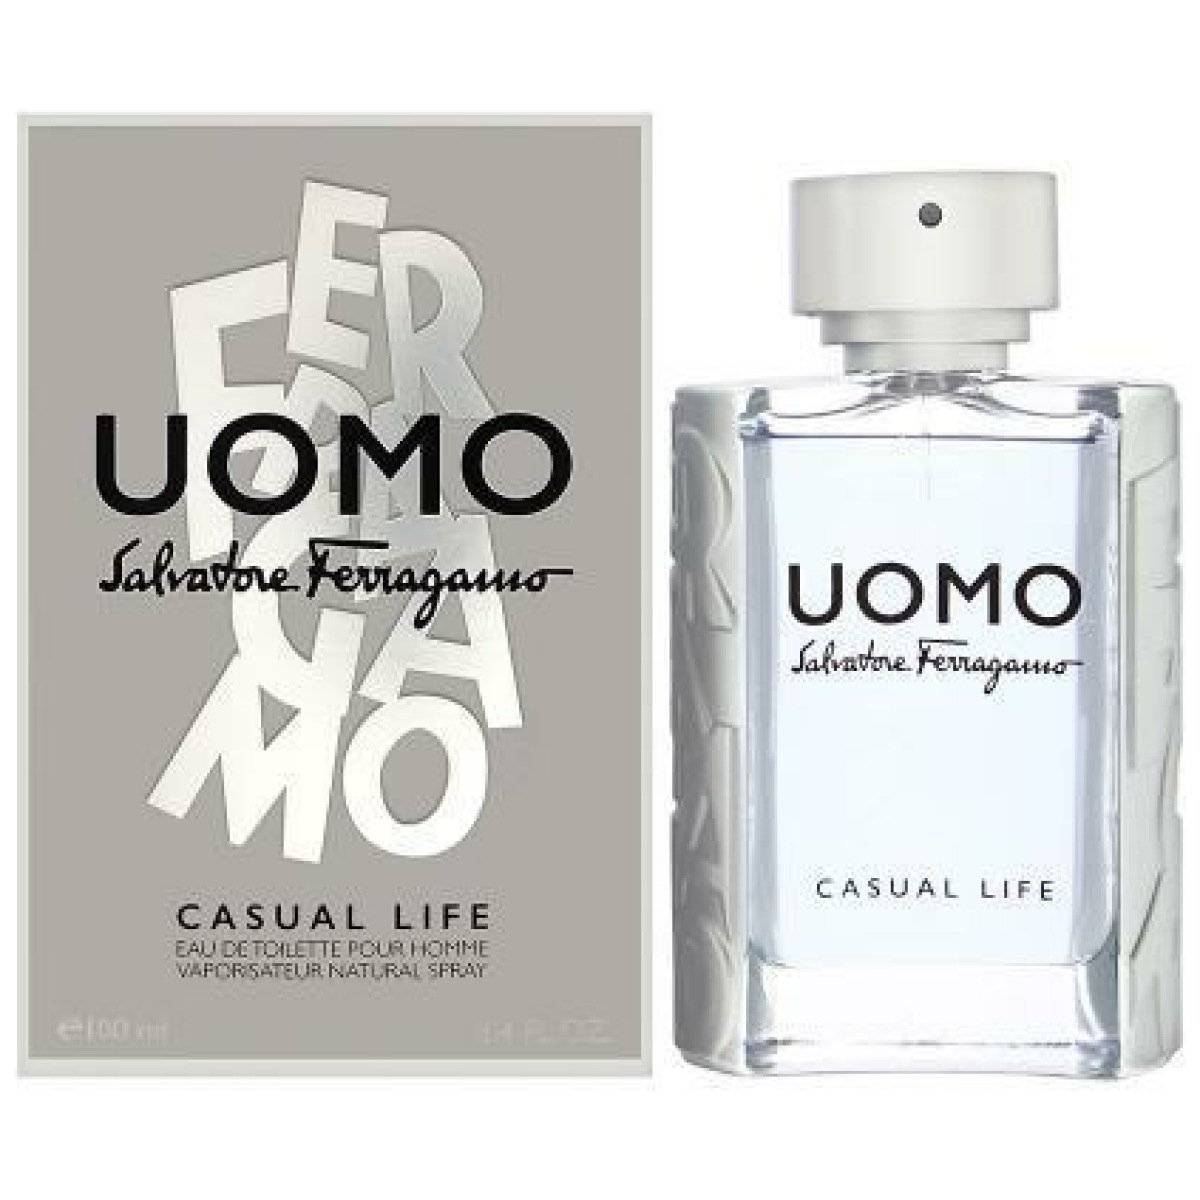 Salvatore Ferragamo Uomo Casual Life EDT Perfume For Men 100 ml